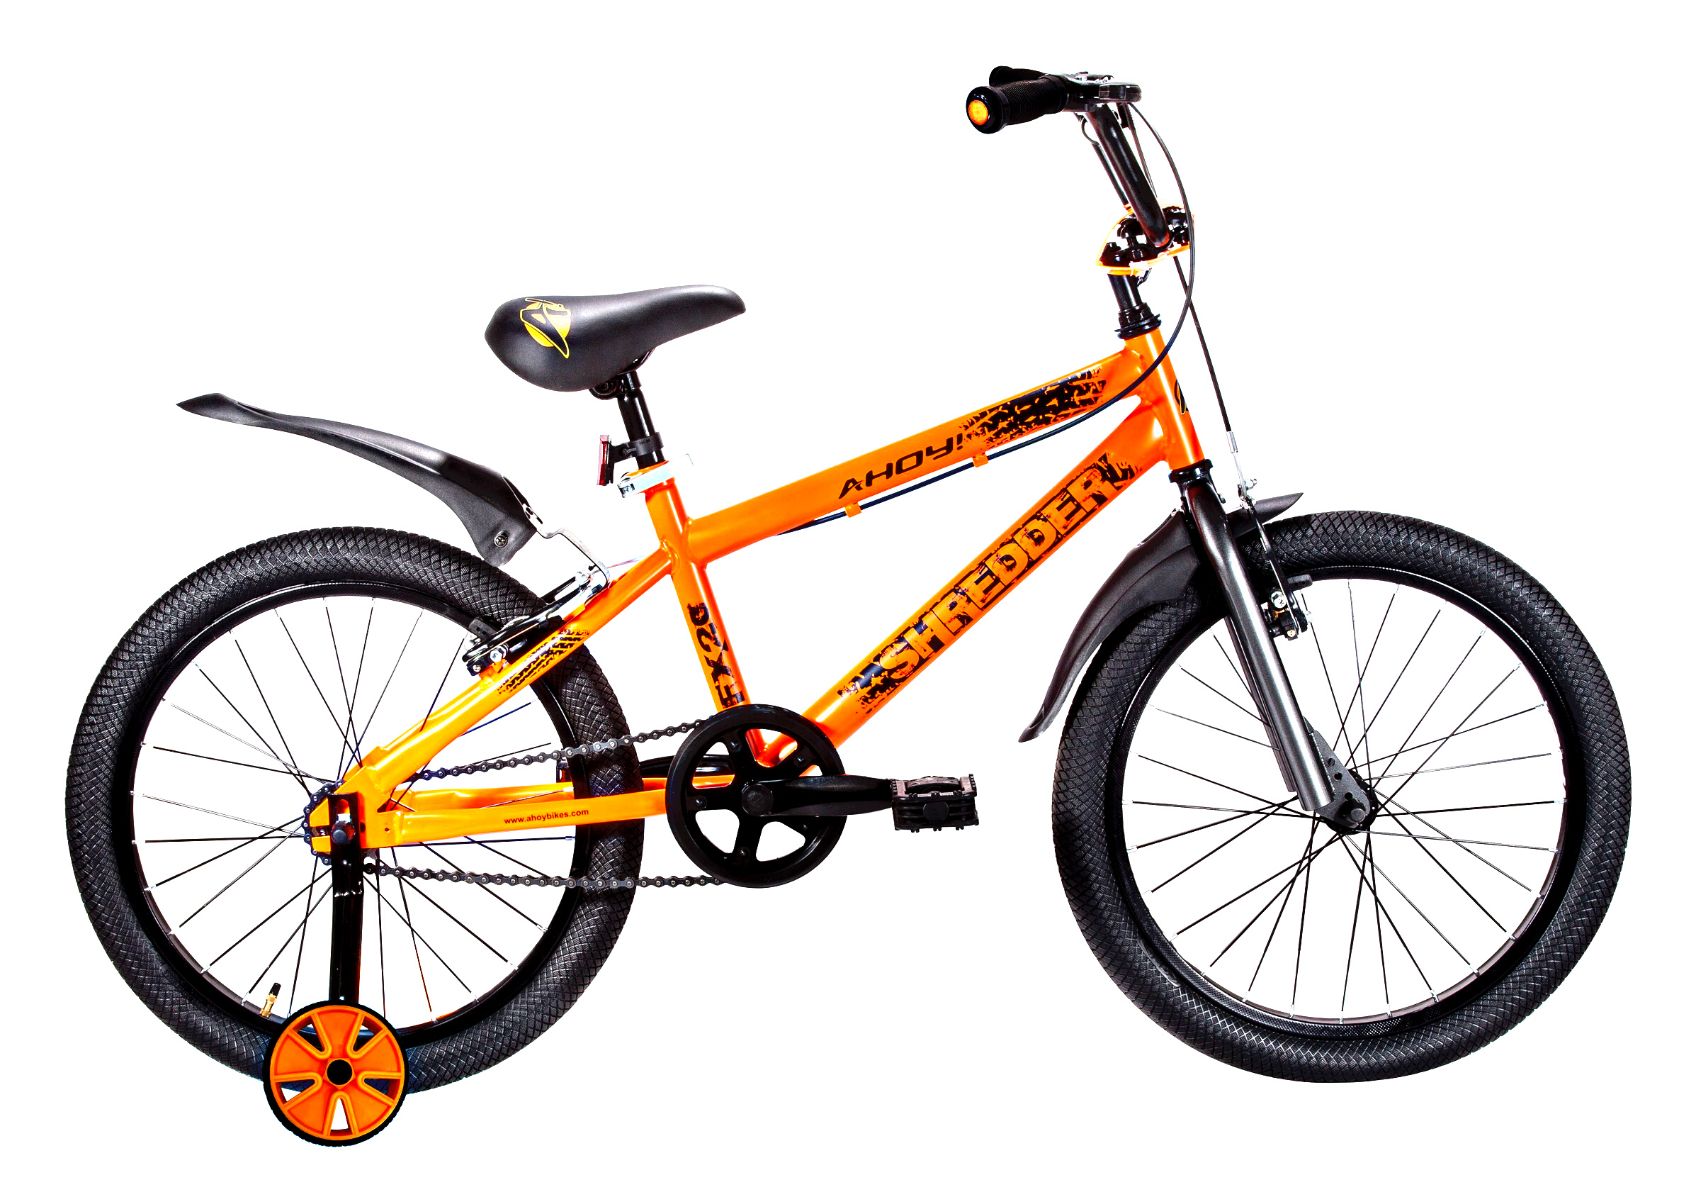 Shredder Childrens Bike Single Speed 20T | Buy Orange Kids Bike for Boys